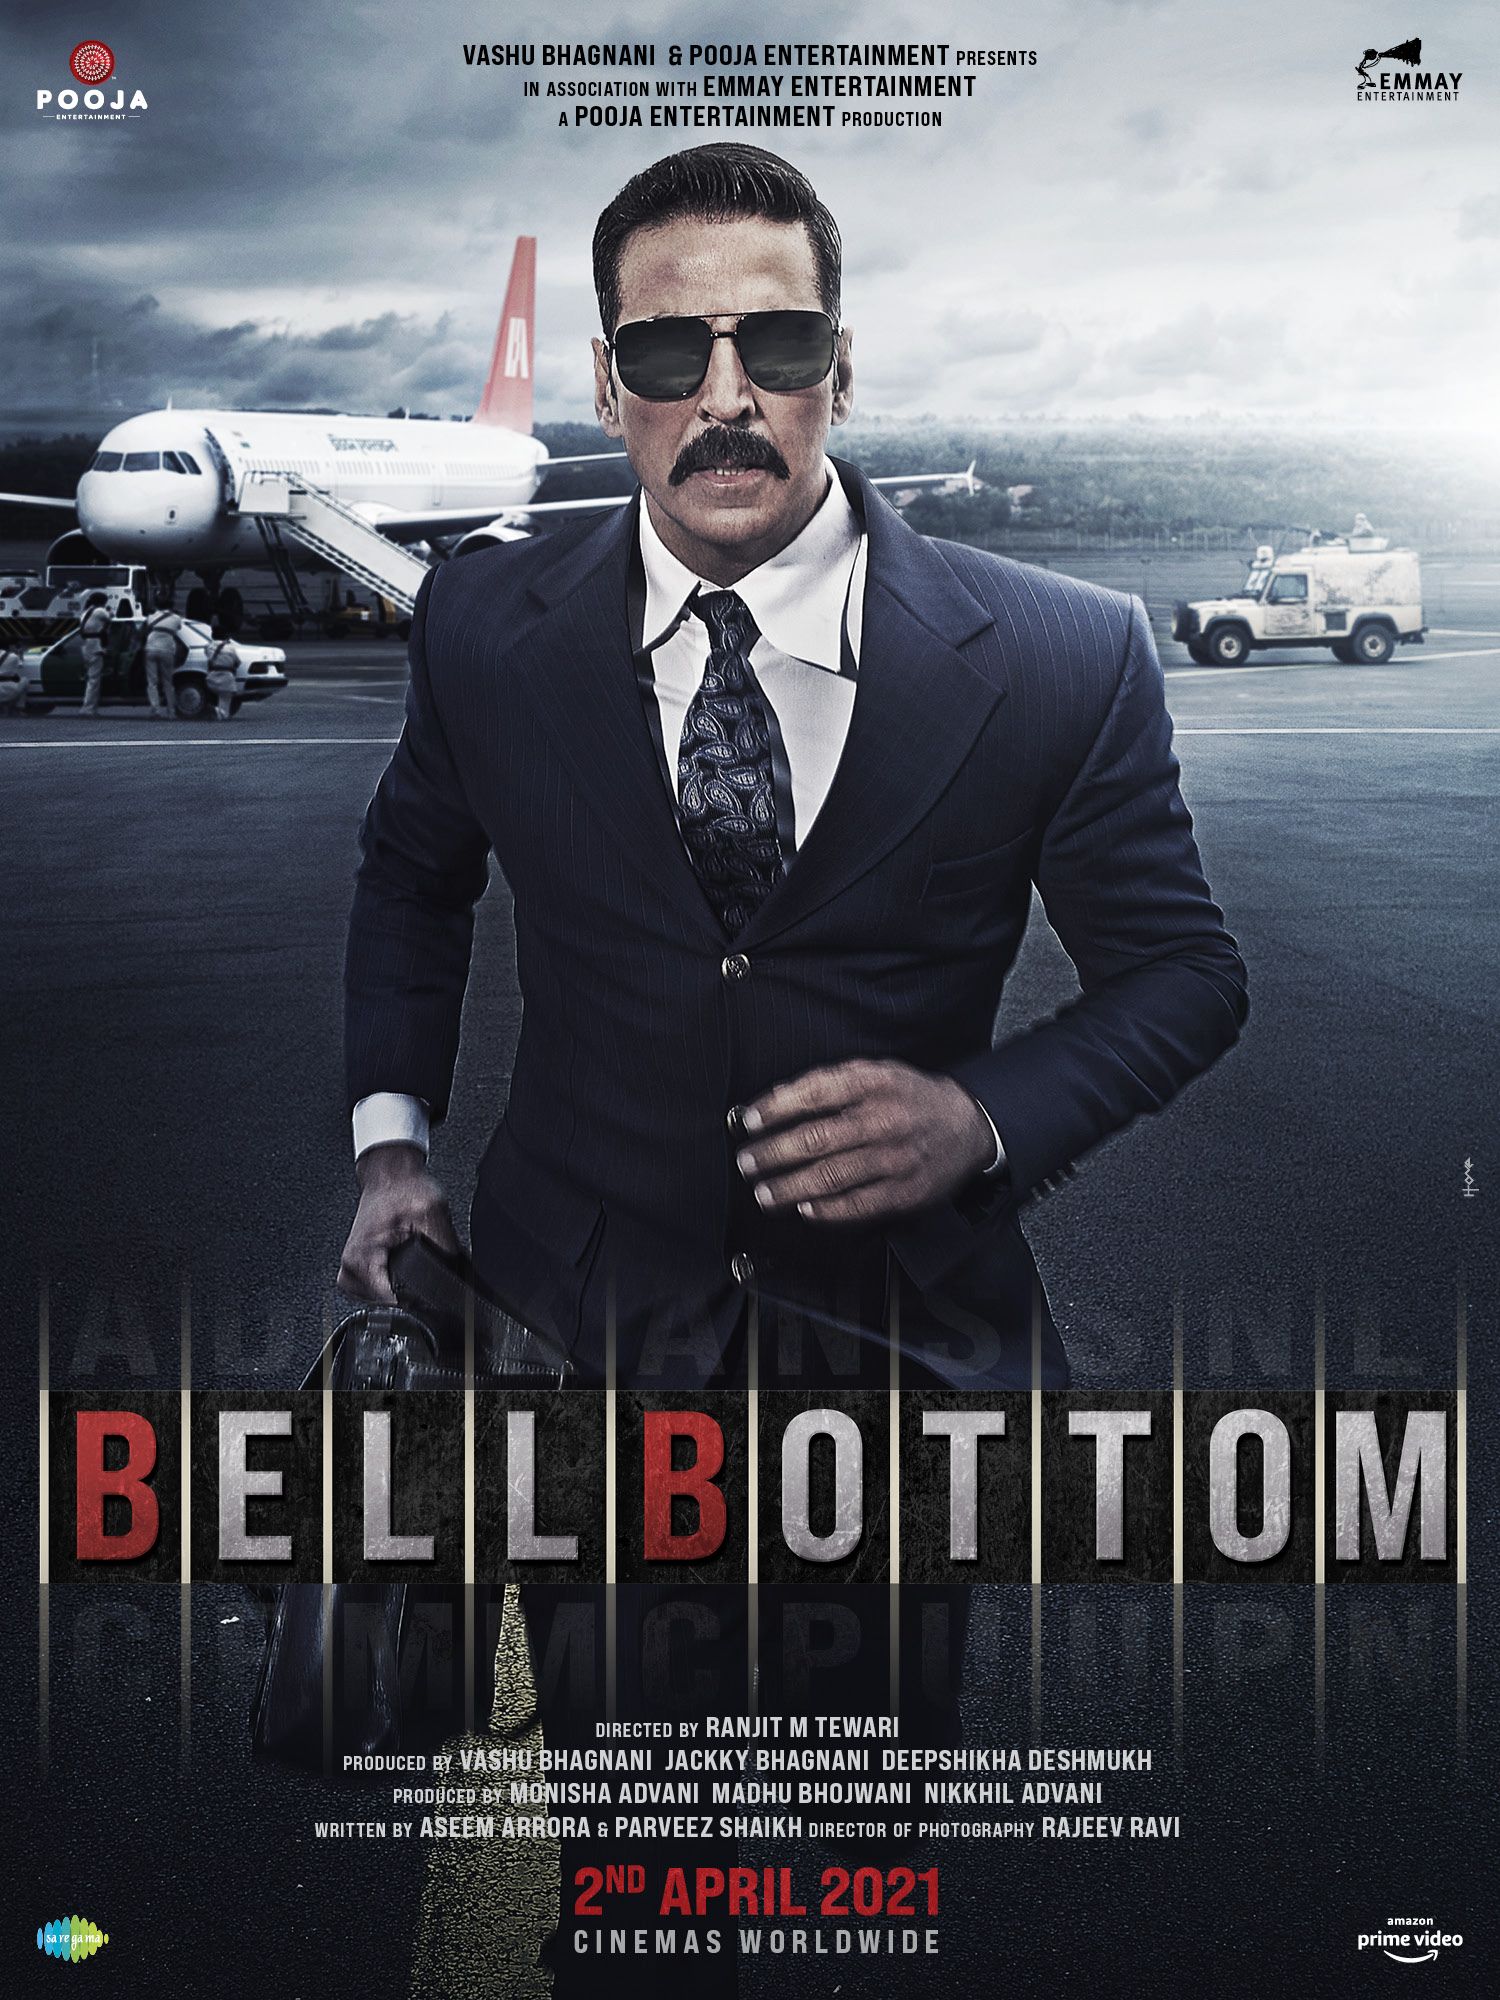 Bellbottom online film